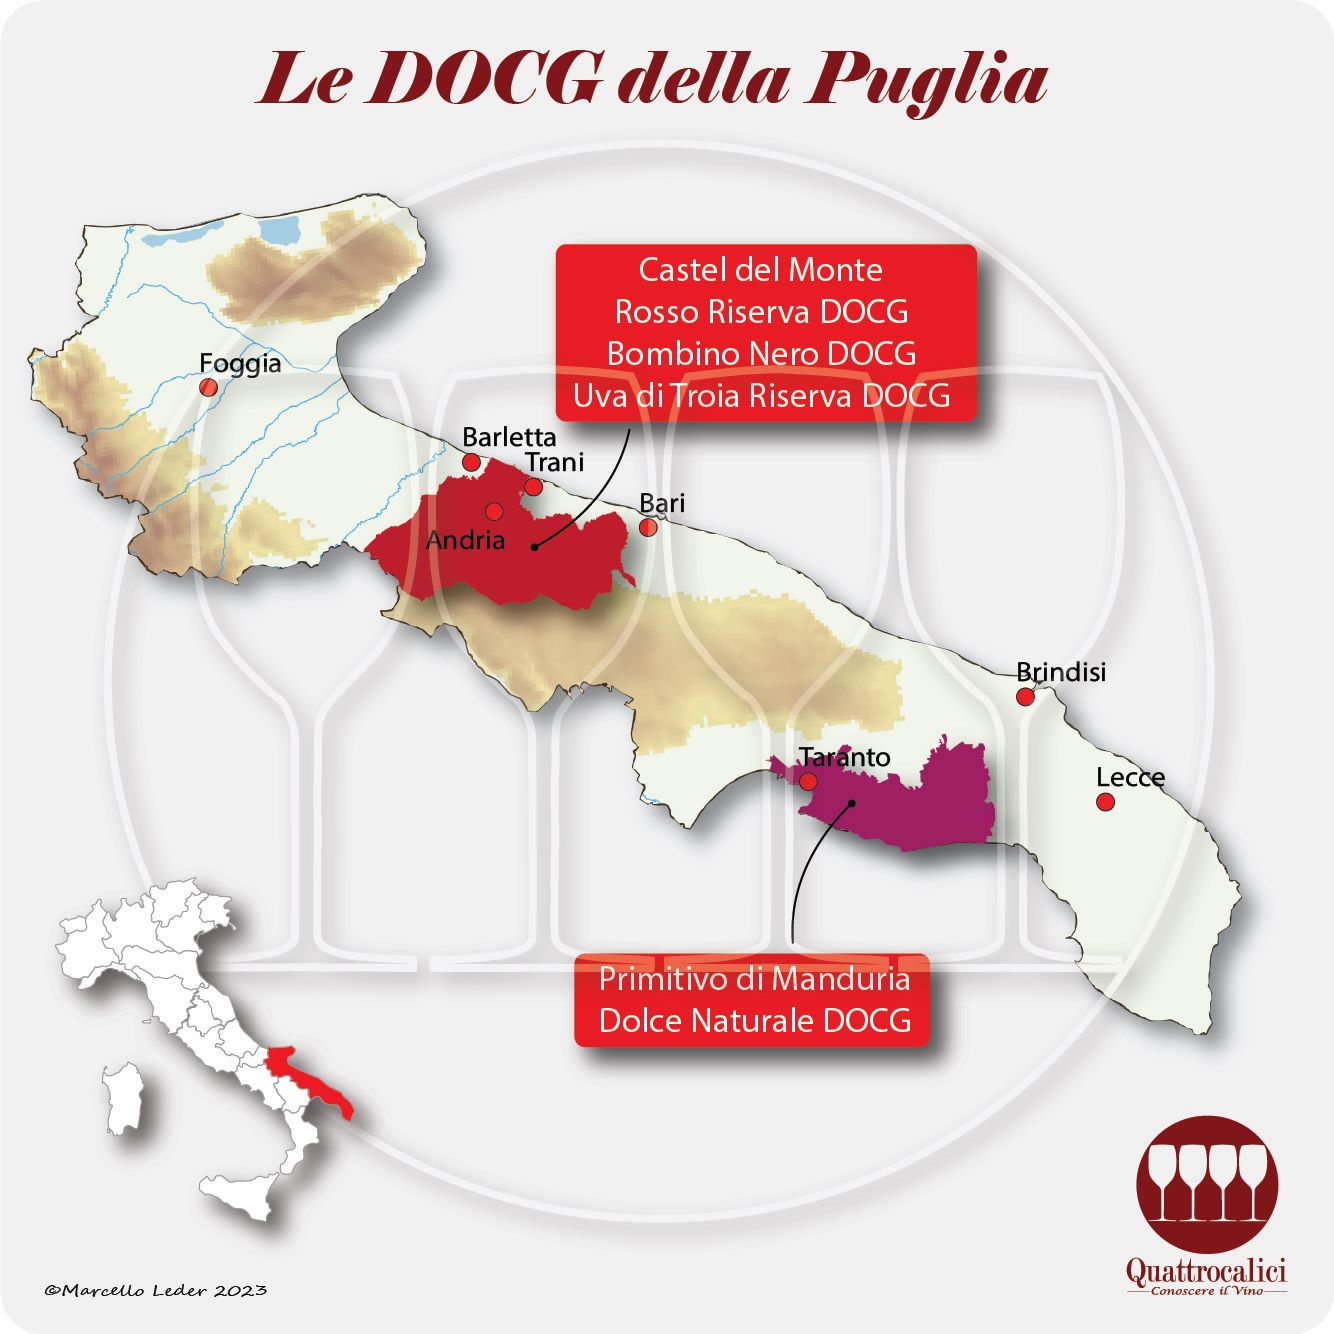 Le DOCG della Puglia